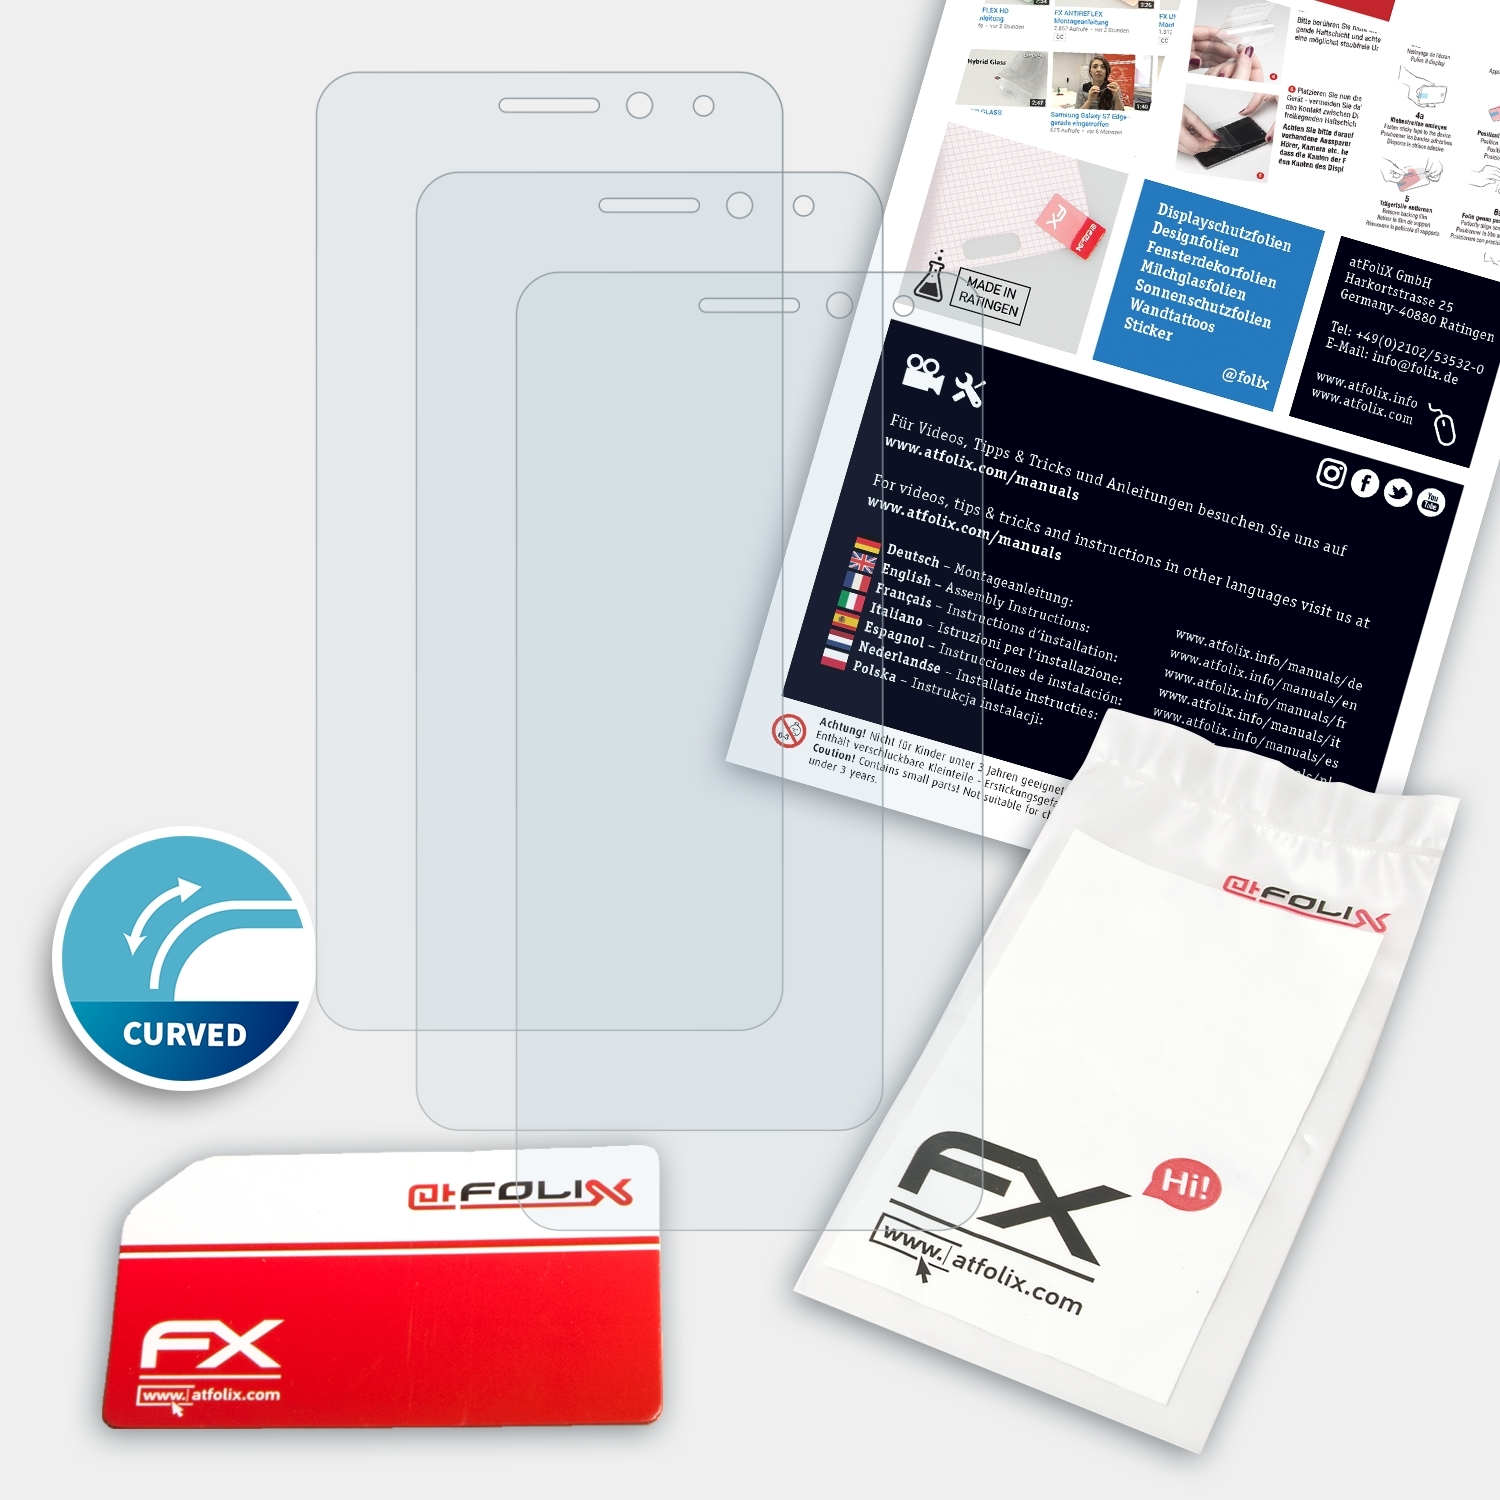 GM Plus) 5 3x General-Mobile FX-ActiFleX ATFOLIX Displayschutz(für